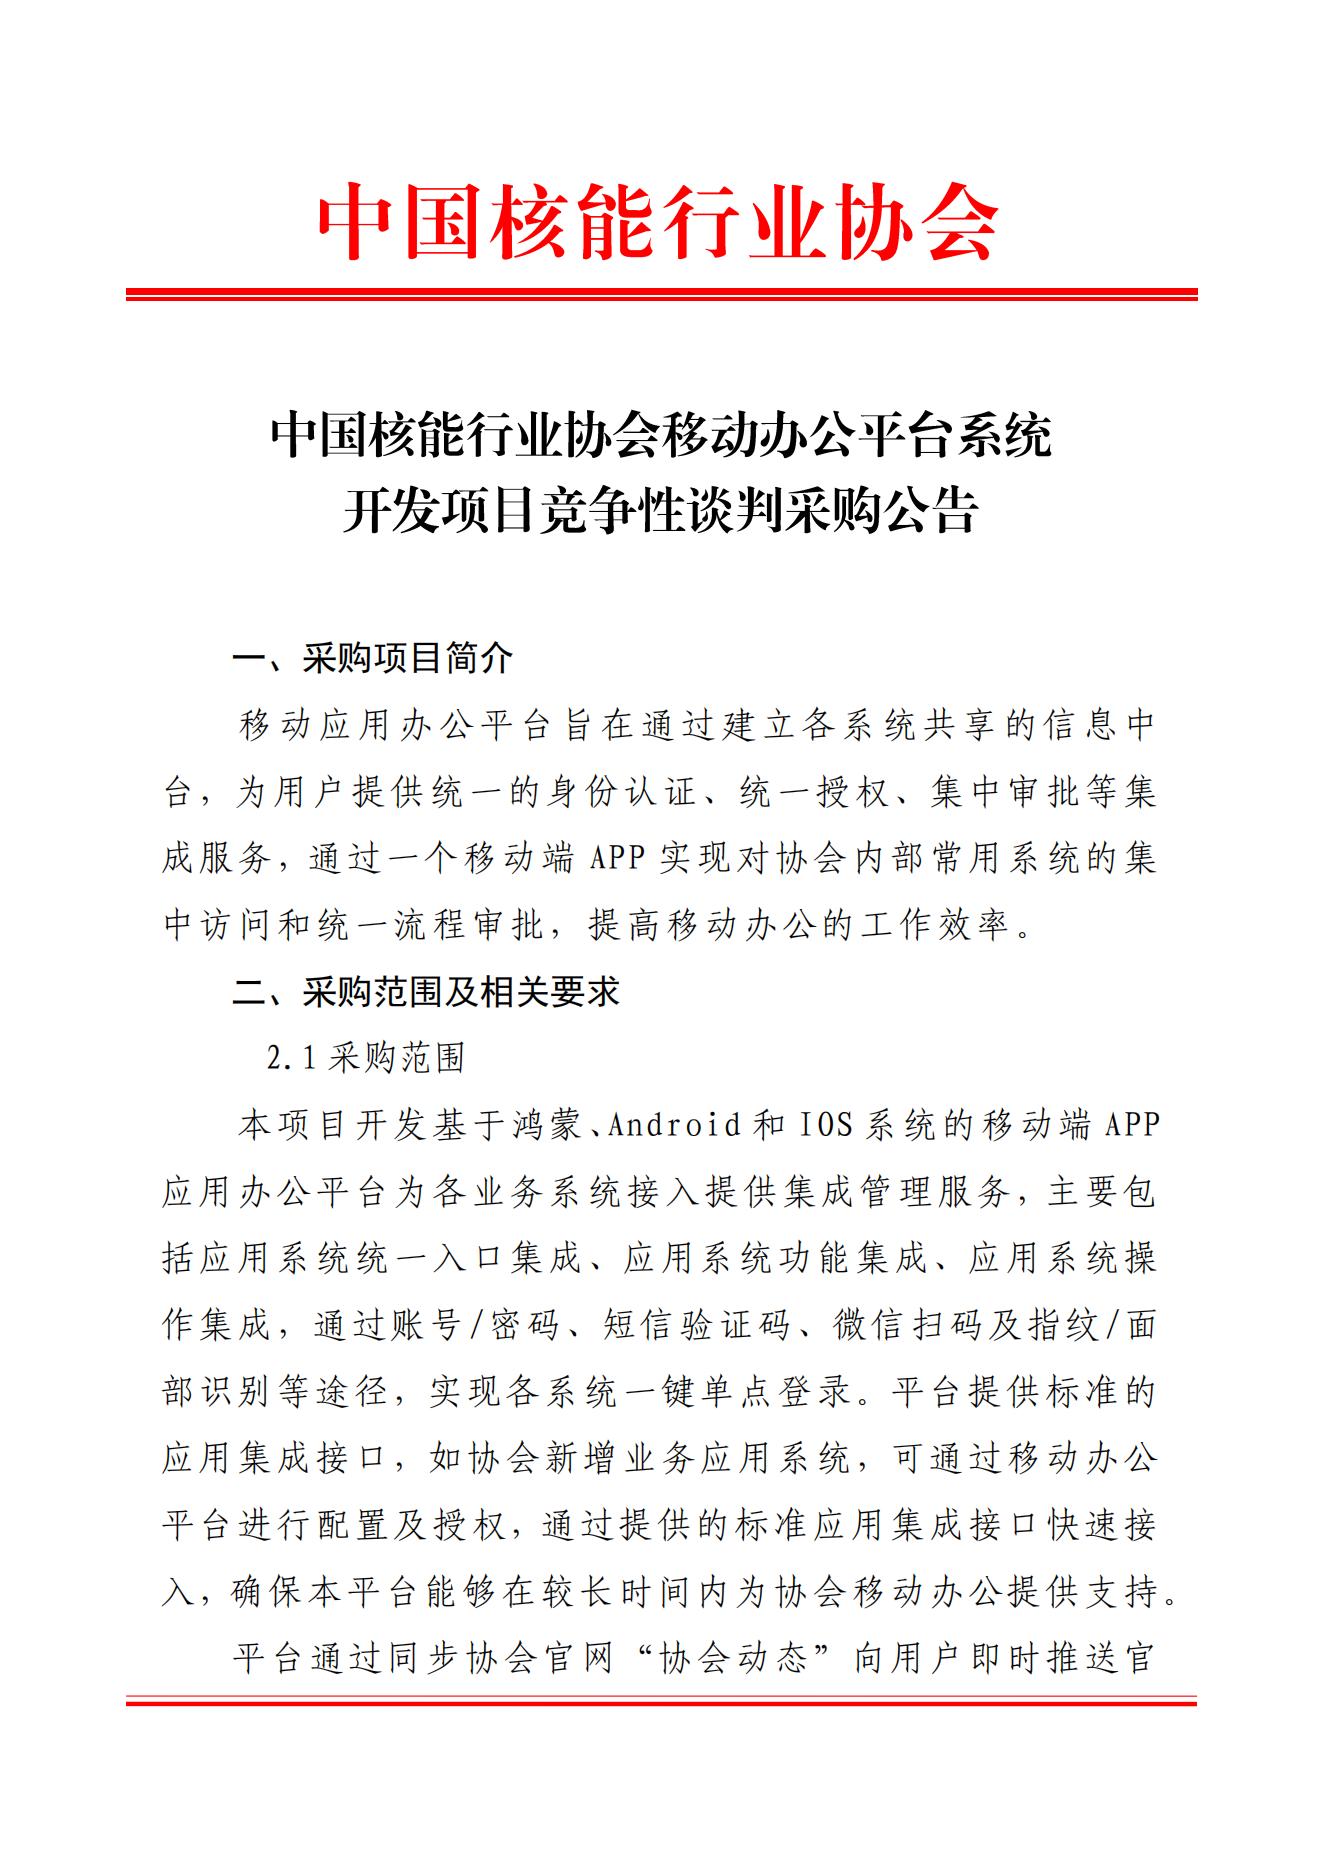 中国核能行业协会移动办公平台系统开发项目竞争性谈判公告 (2)_00.jpg